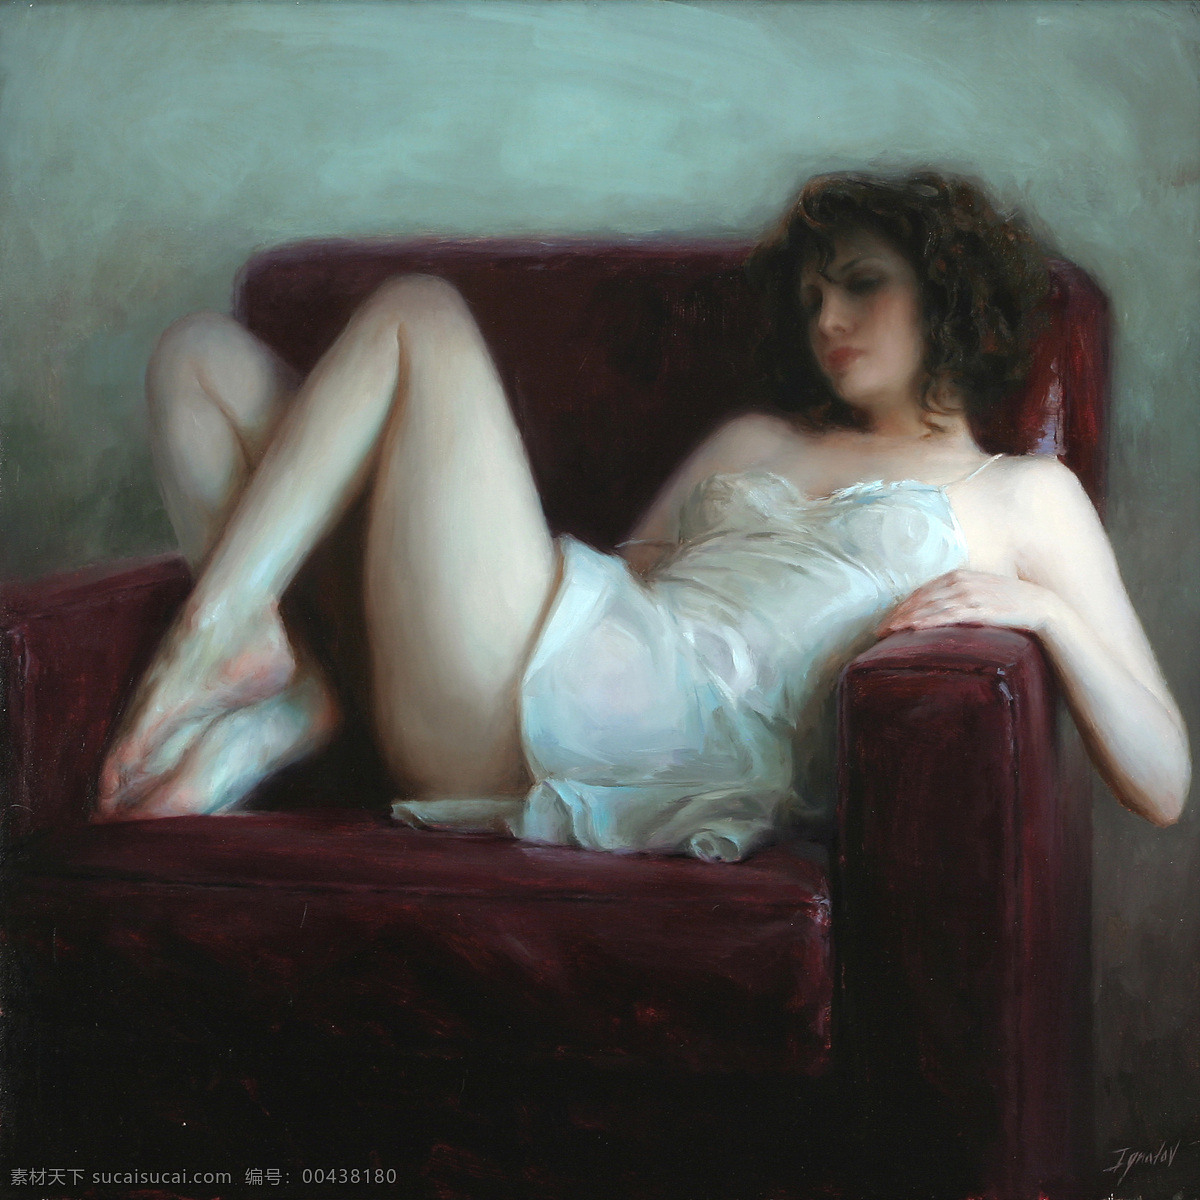 国外 油画 人物图片 美女 半裸 高清 沙发 人物 图 绘画书法 文化艺术